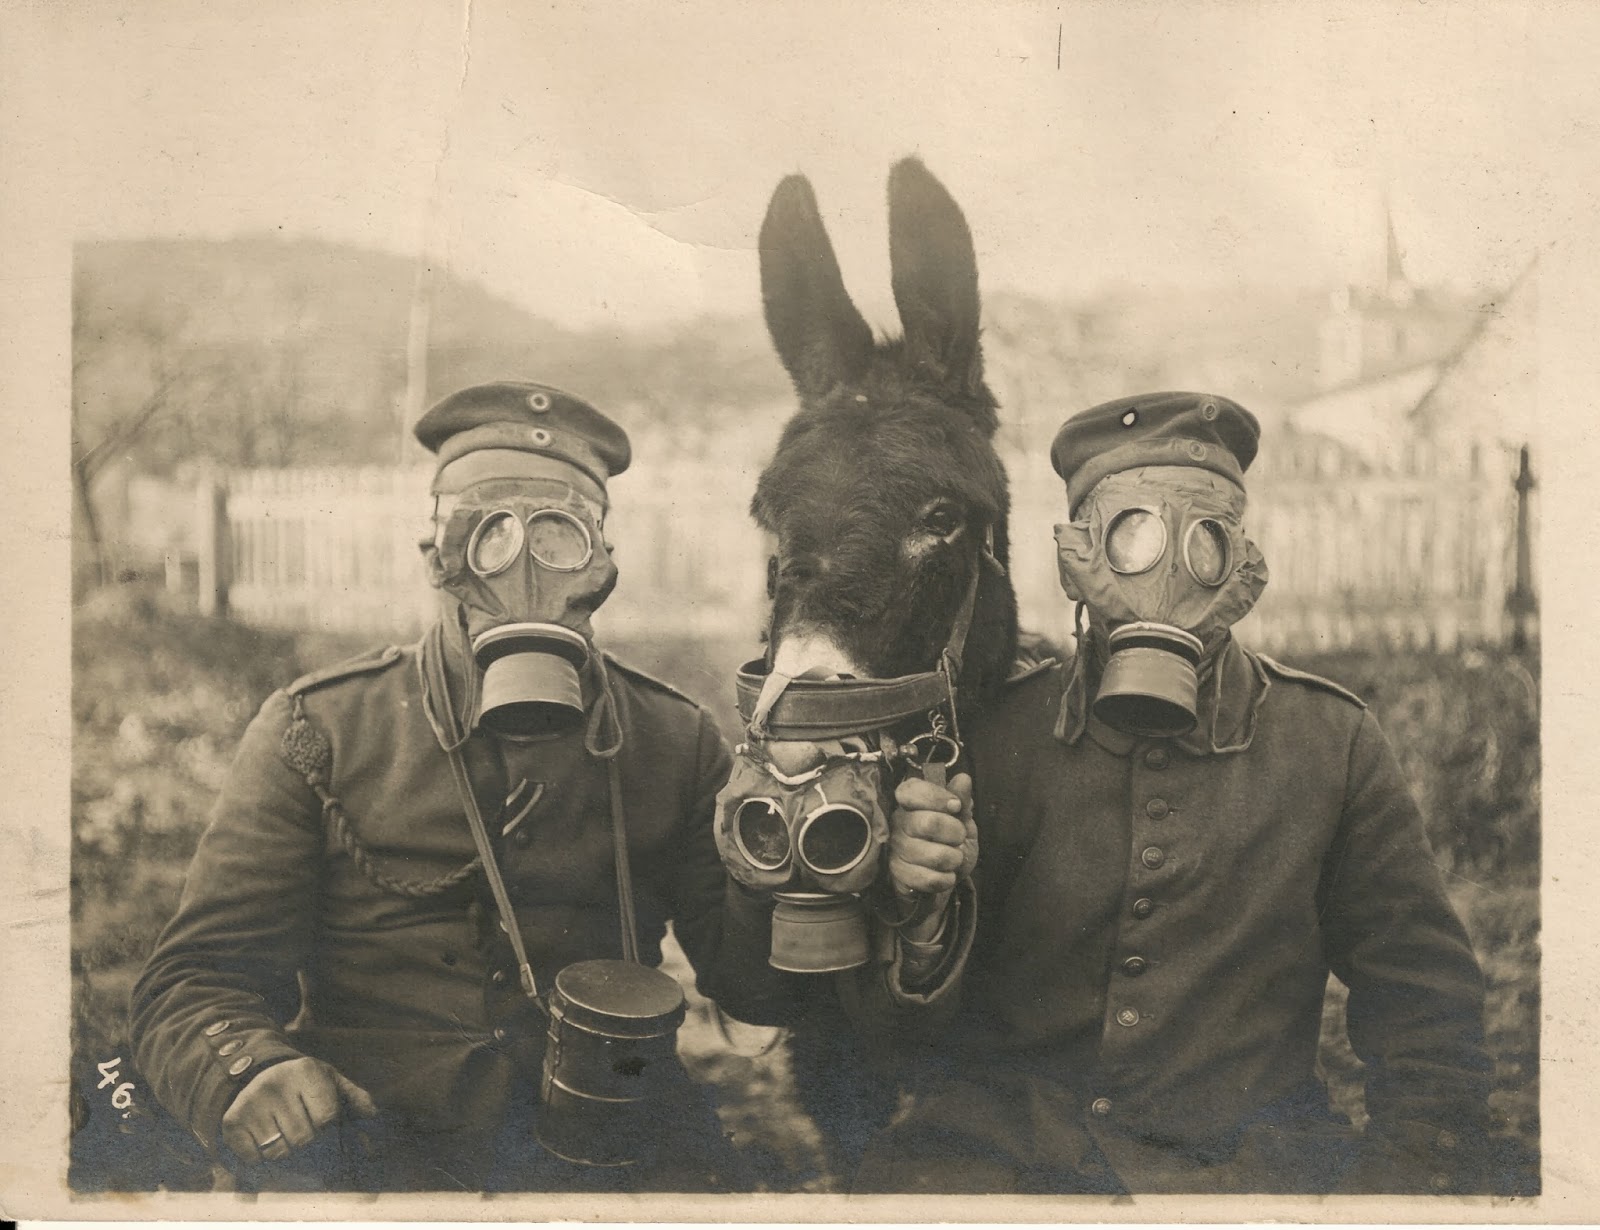 gas chambers mask